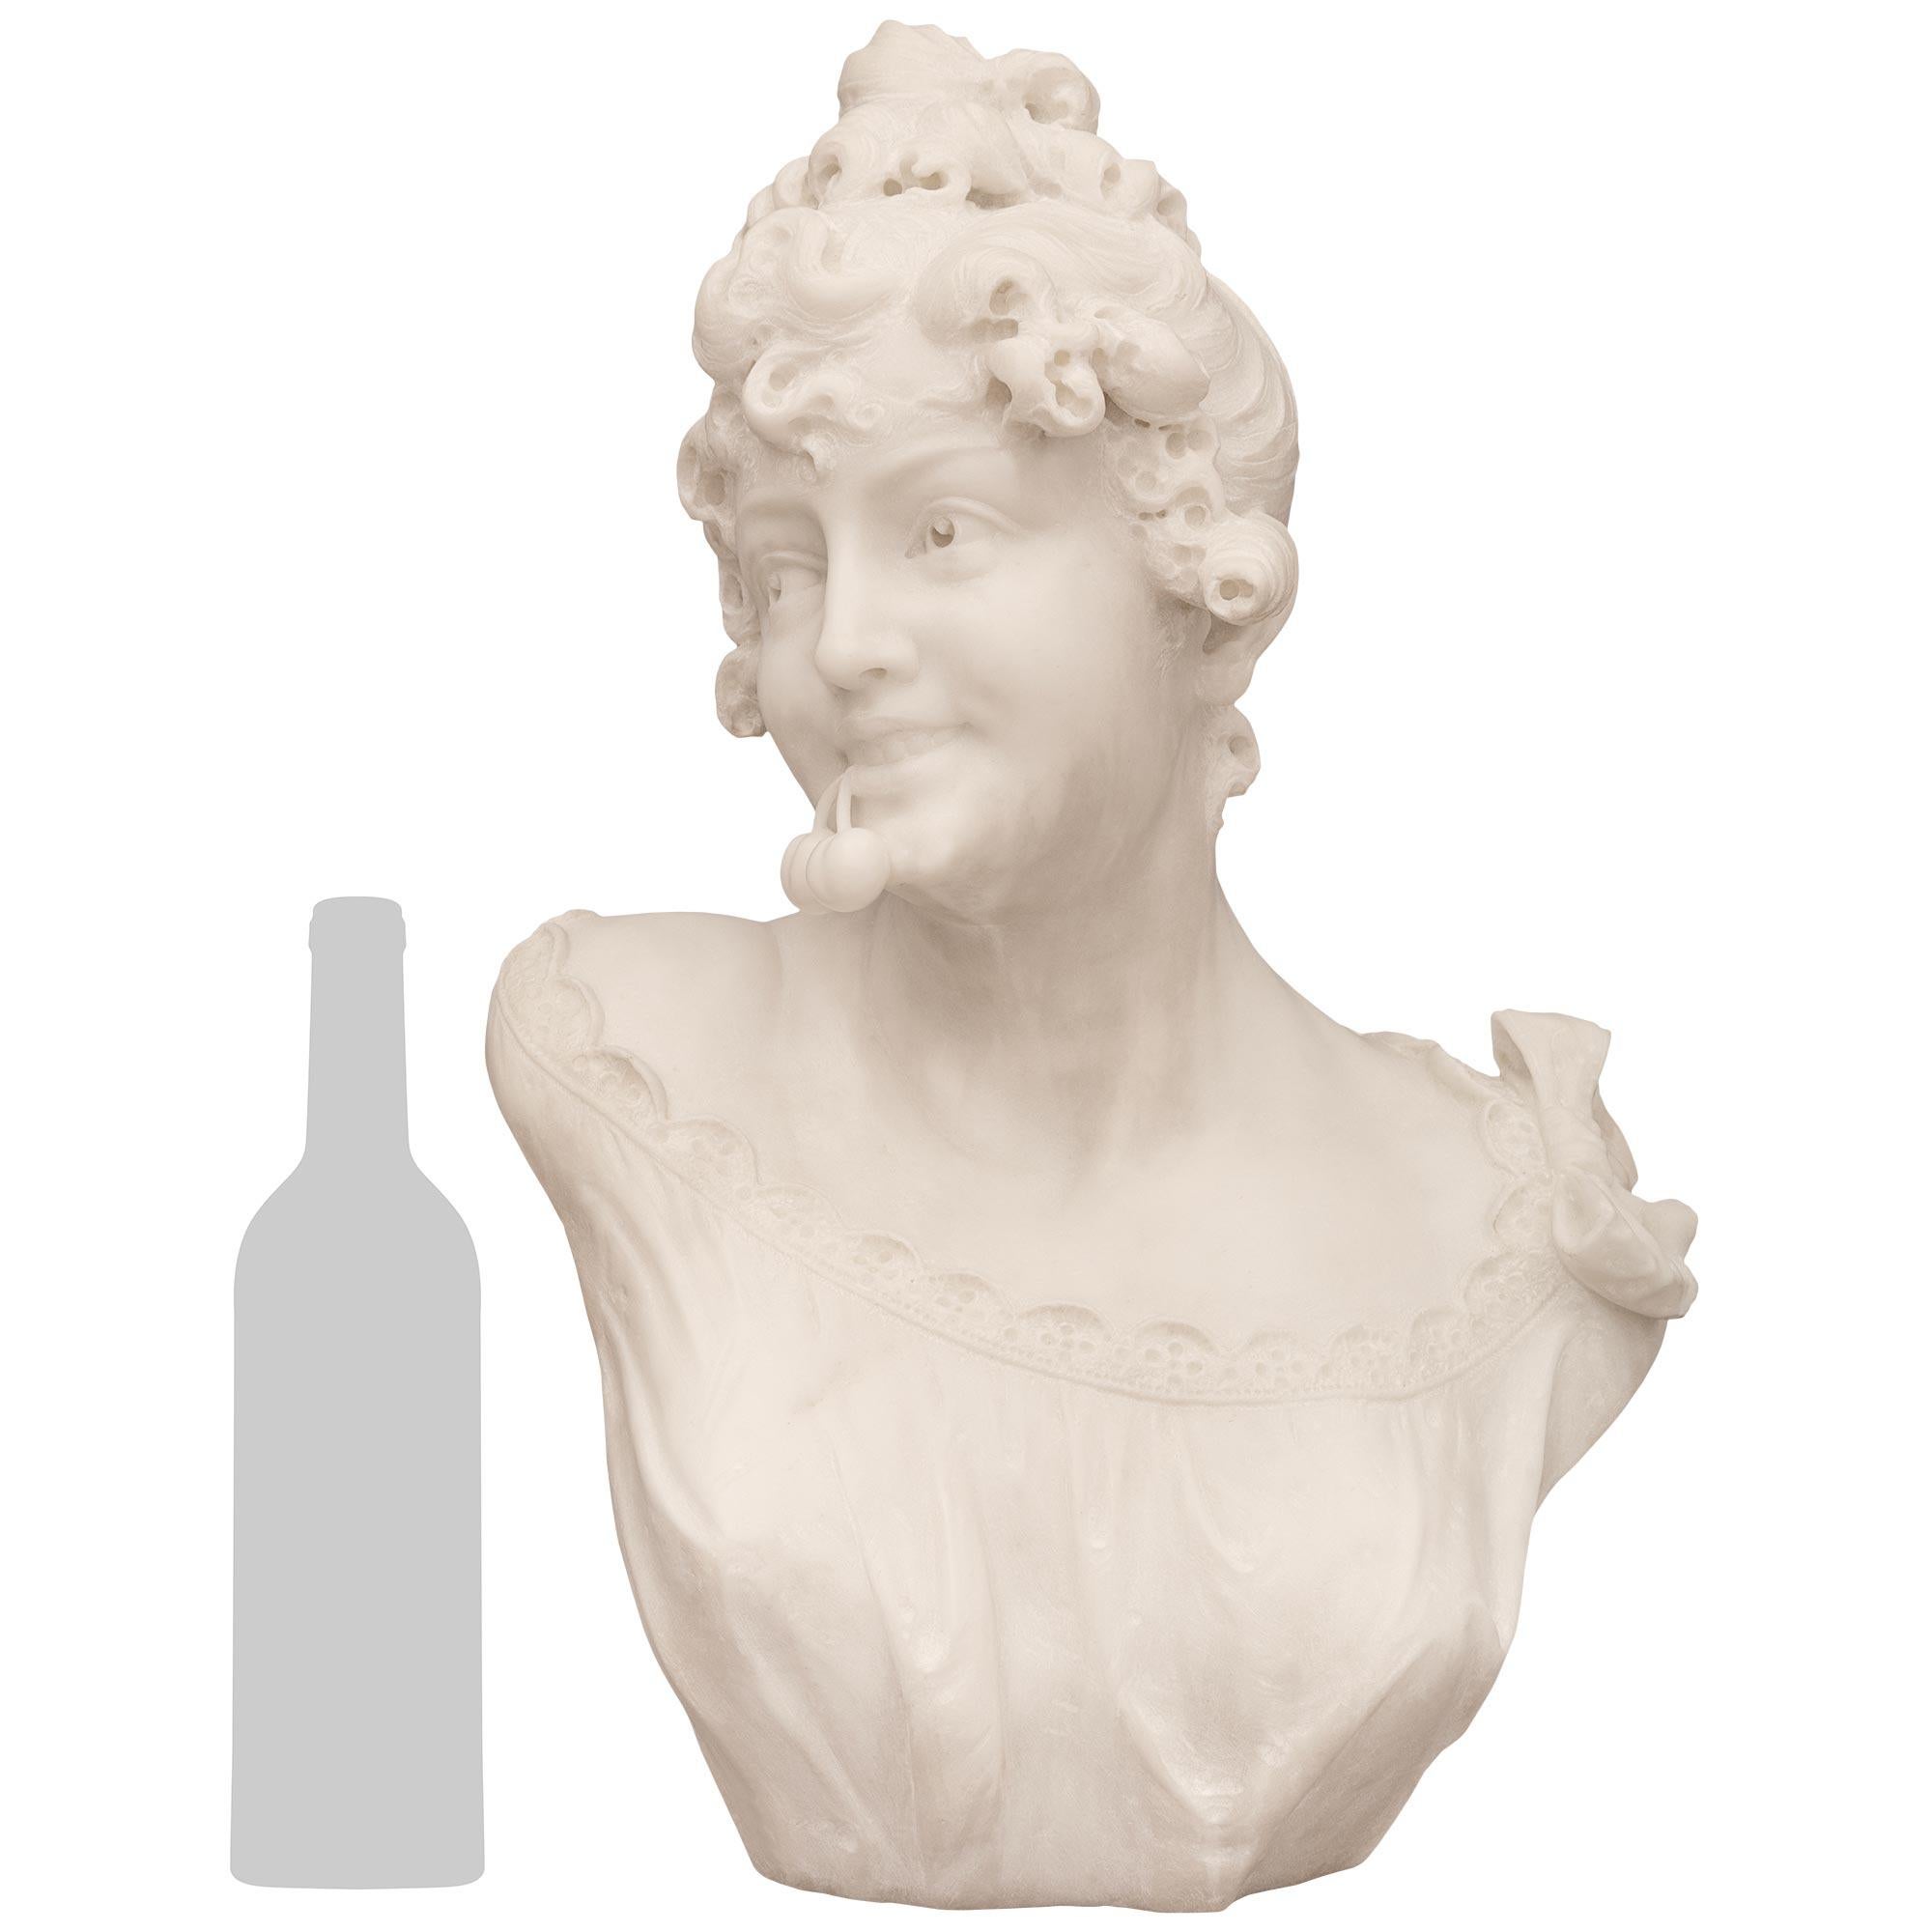 Magnifique buste de jeune fille en marbre blanc de Carrare, signé R. Batelli, datant du XIXe siècle. Cette statue merveilleusement charmante représente une jeune fille portant une robe fluide finement détaillée avec une bordure festonnée et un grand